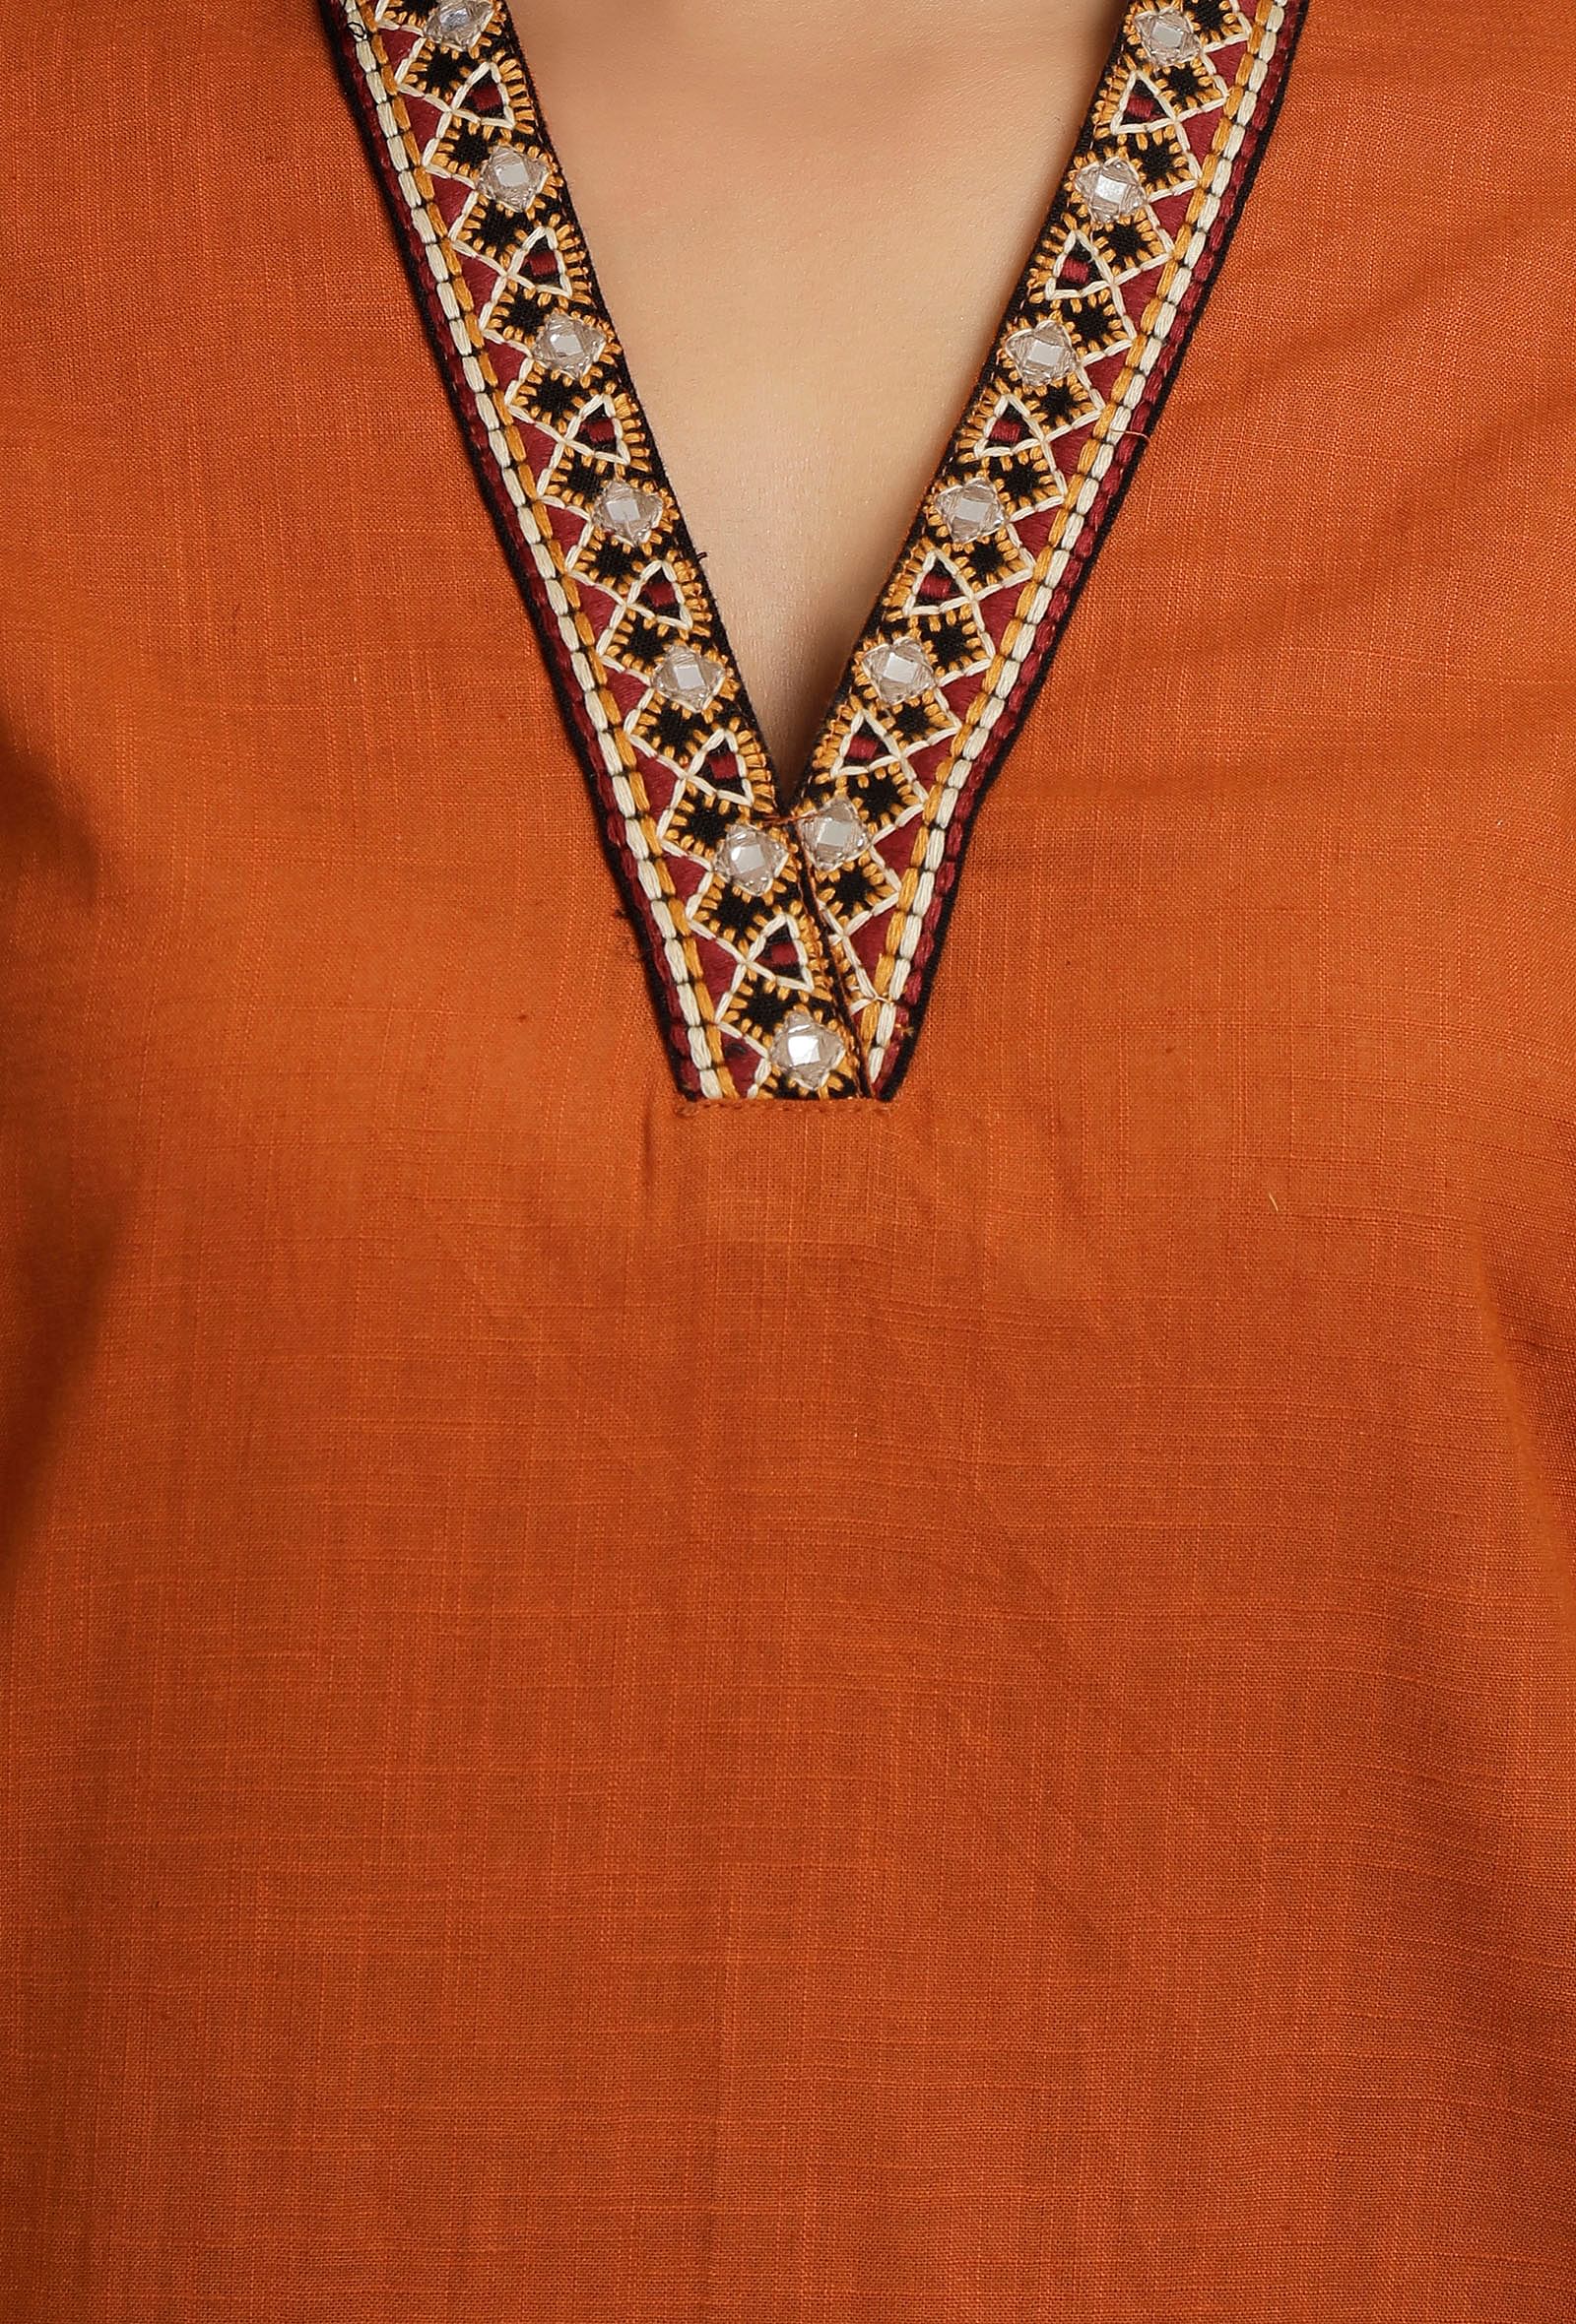 Orange Rust Kurta With Embroidery Details in Neckline